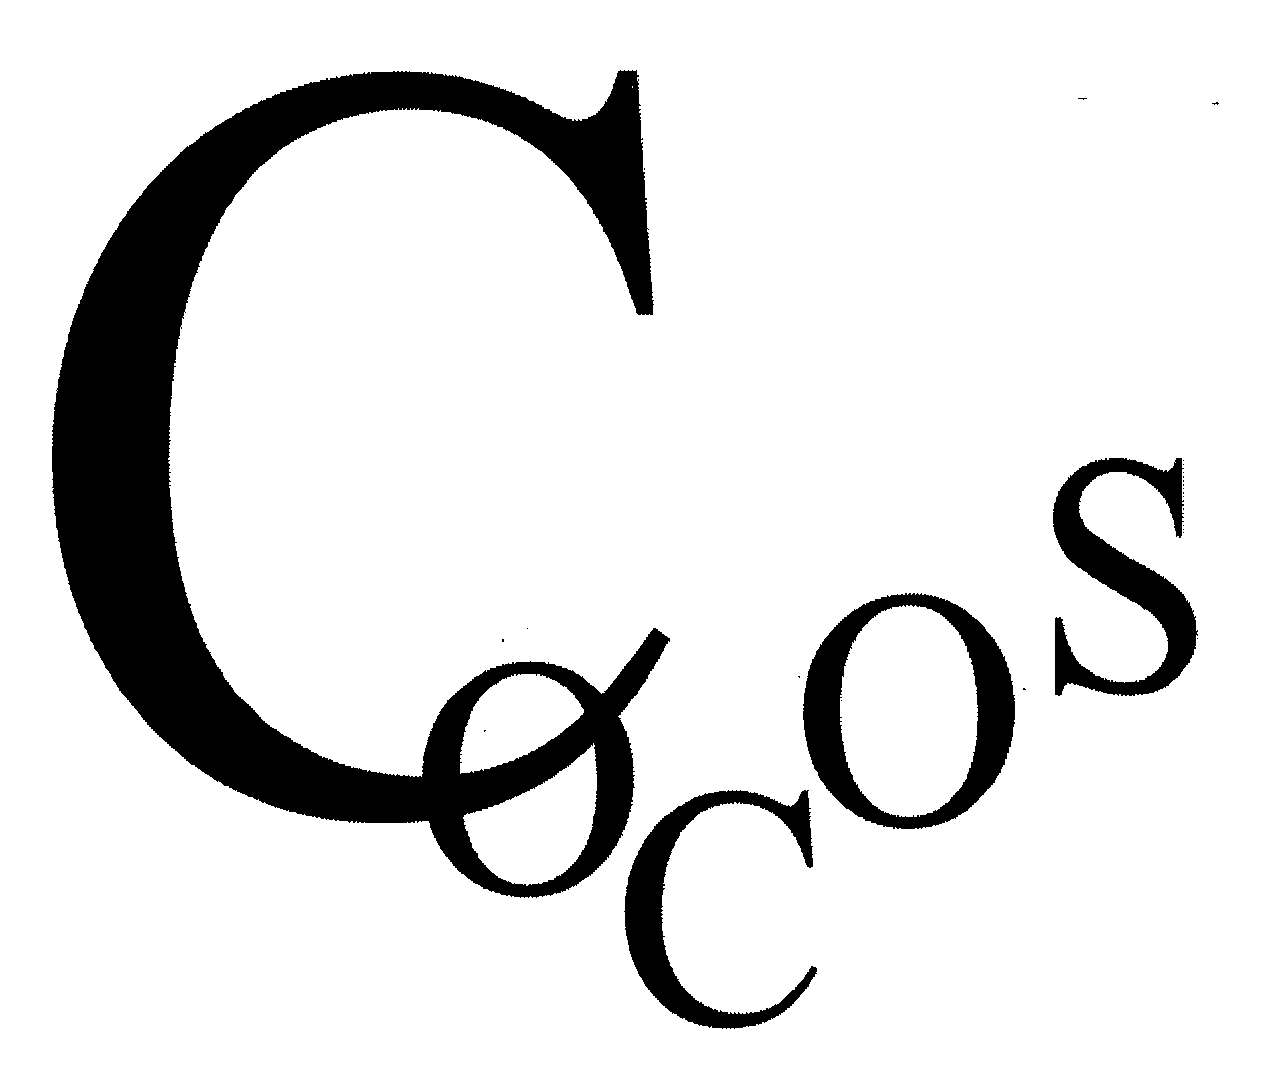  COCOS